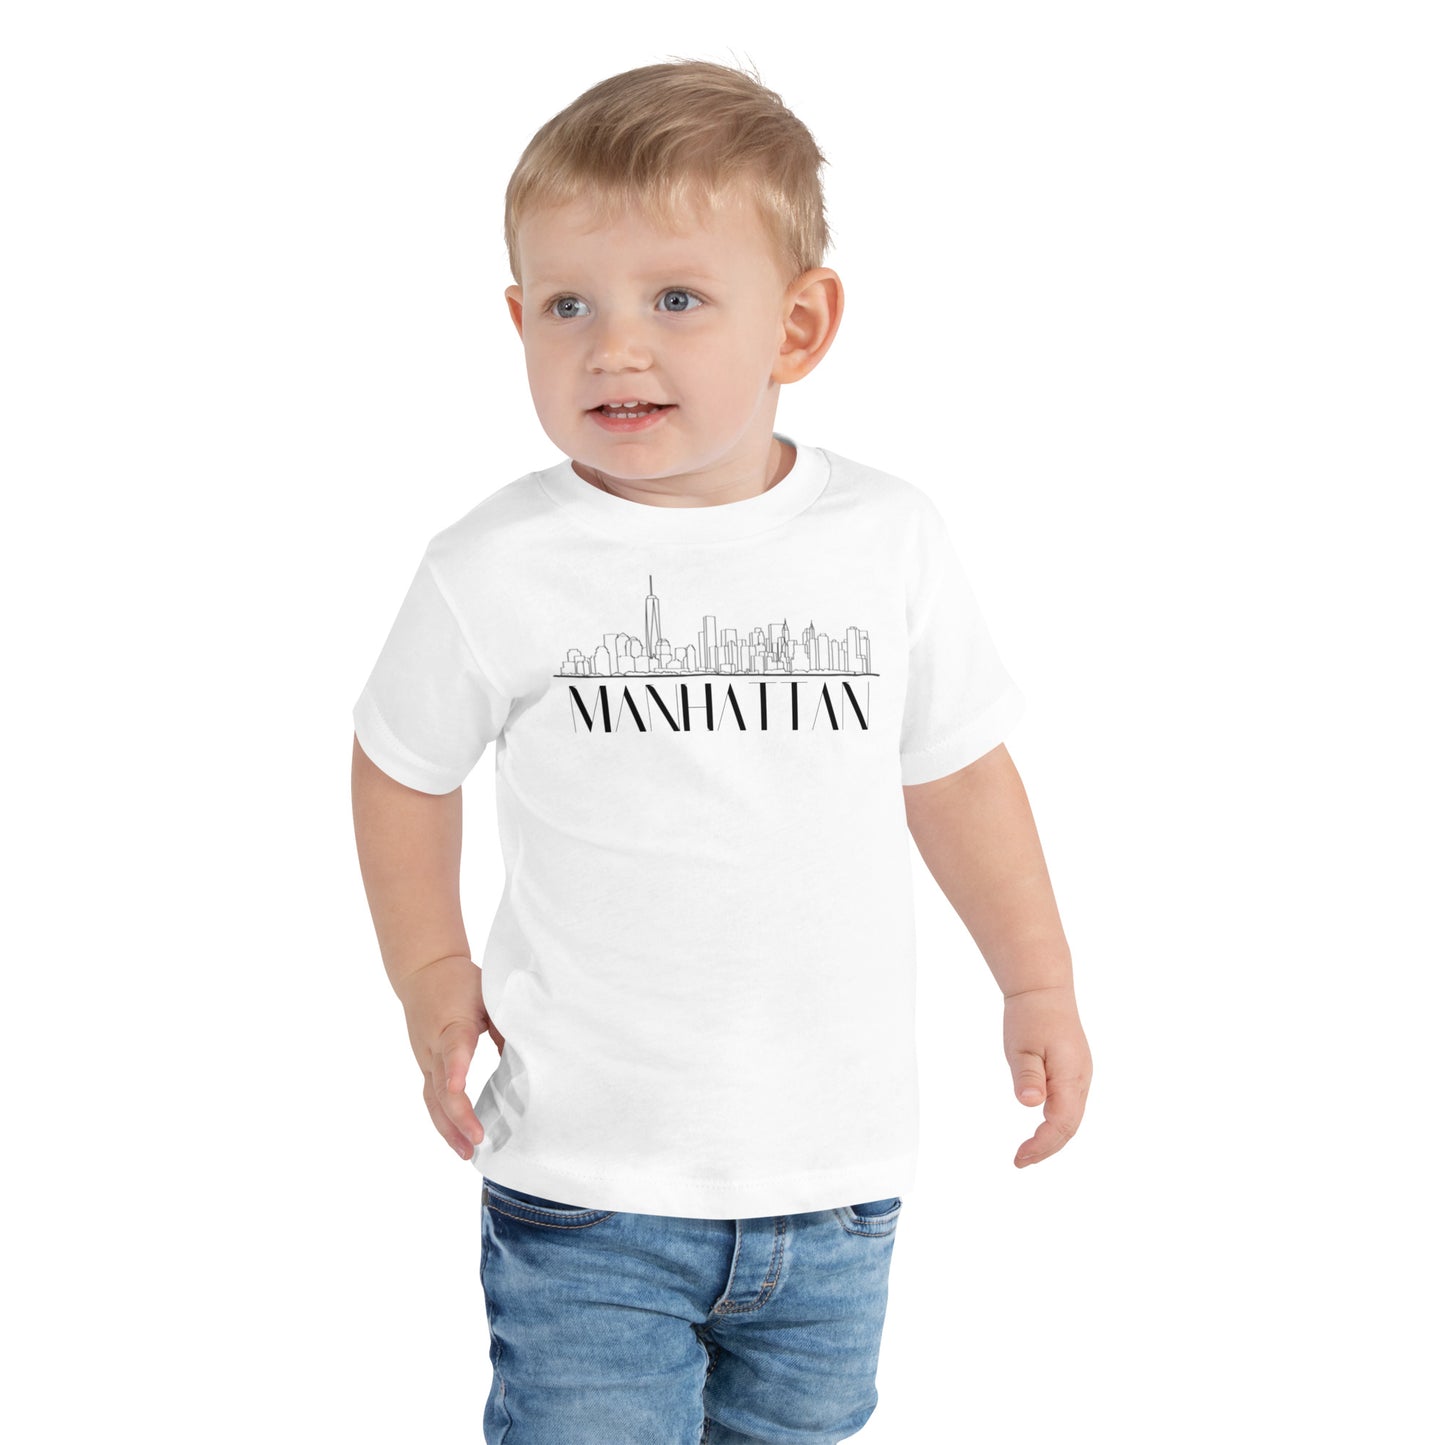 Manhattan Toddler T-shirt